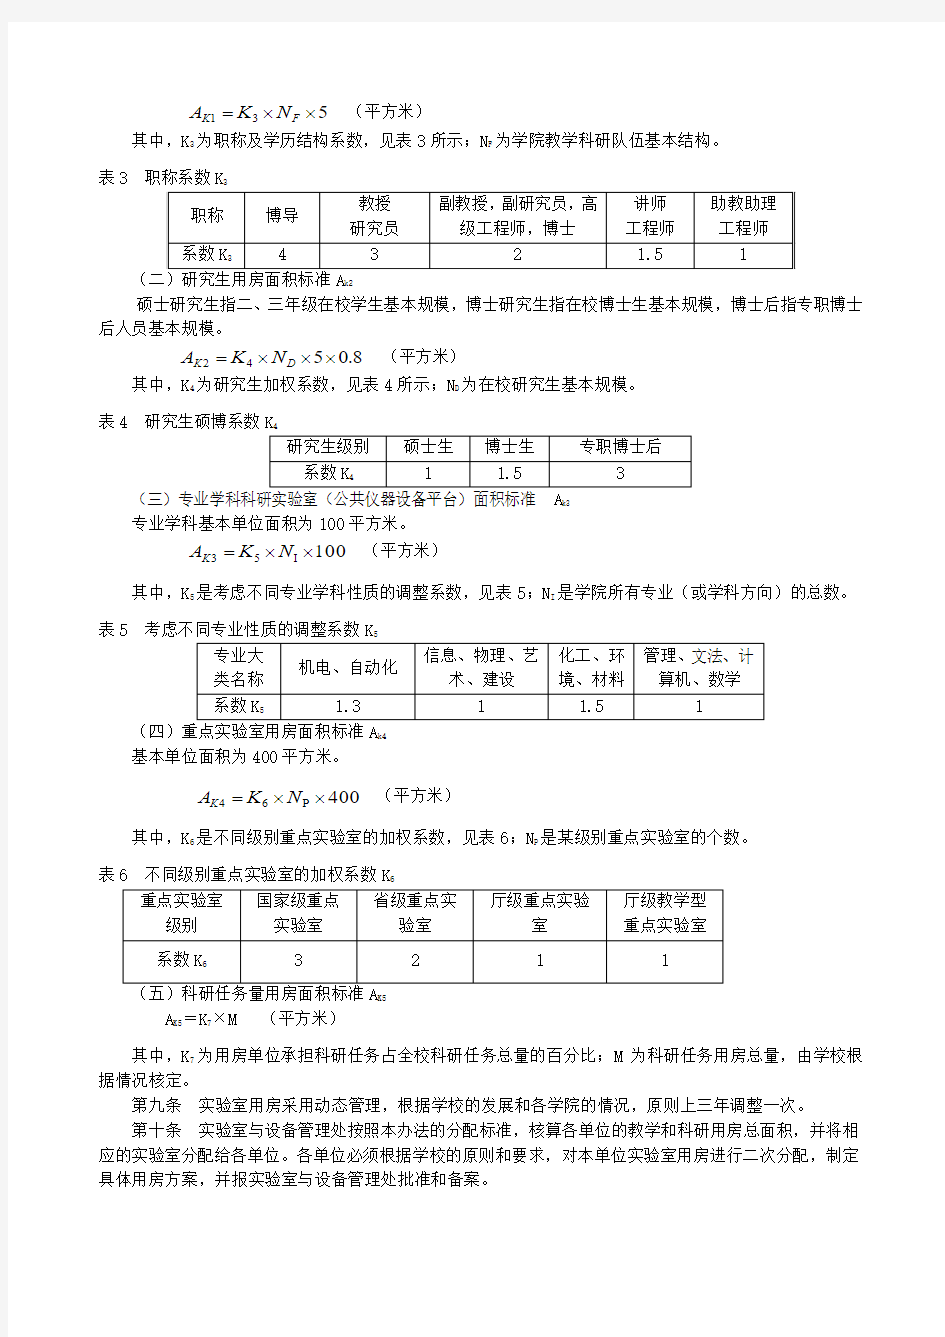 广东工业大学实验室用房分配标准及管理办法